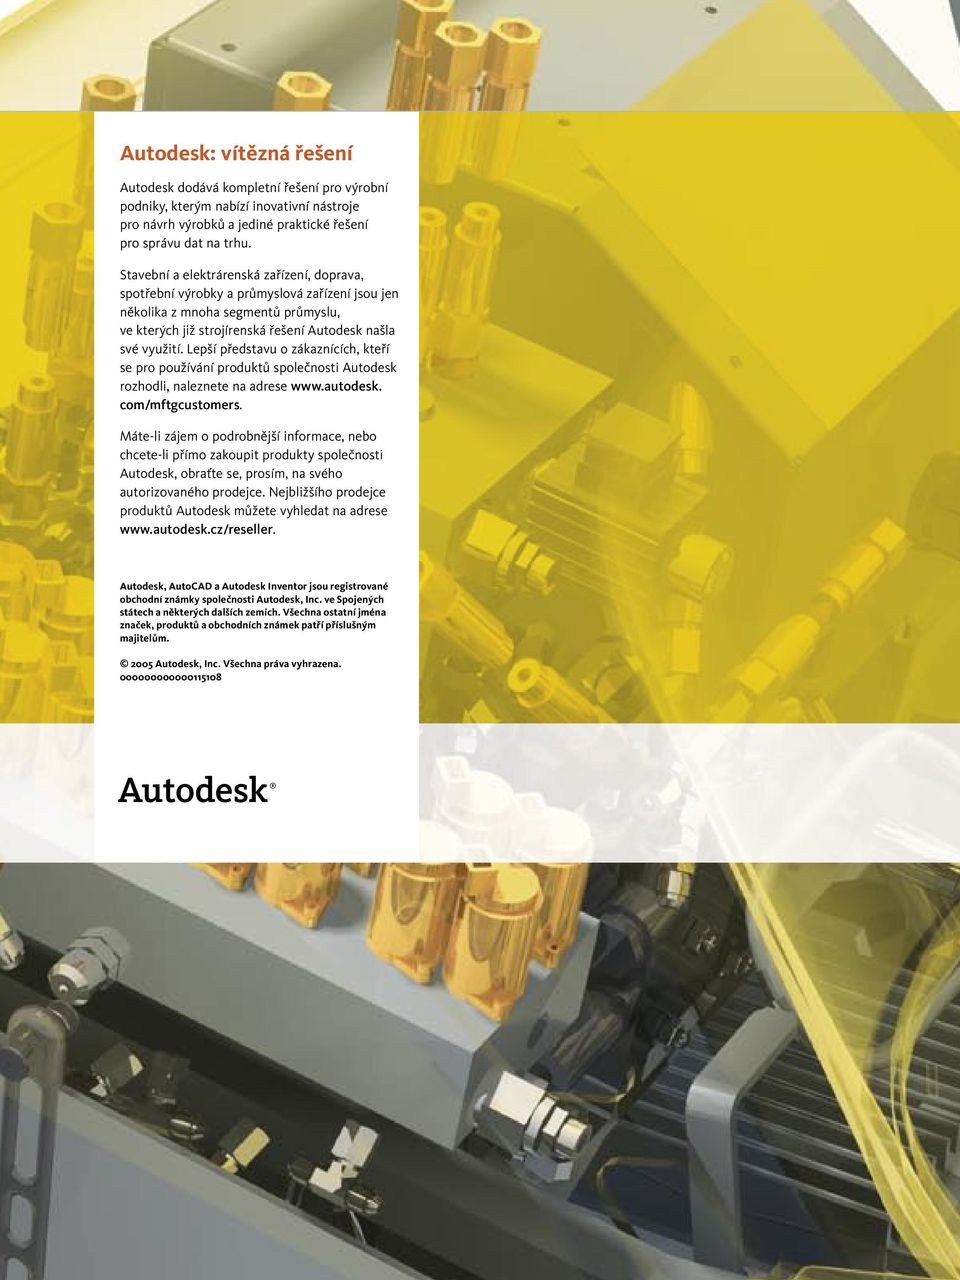 Lepší představu o zákaznících, kteří se pro používání produktů společnosti Autodesk rozhodli, naleznete na adrese www.autodesk. com/mftgcustomers.